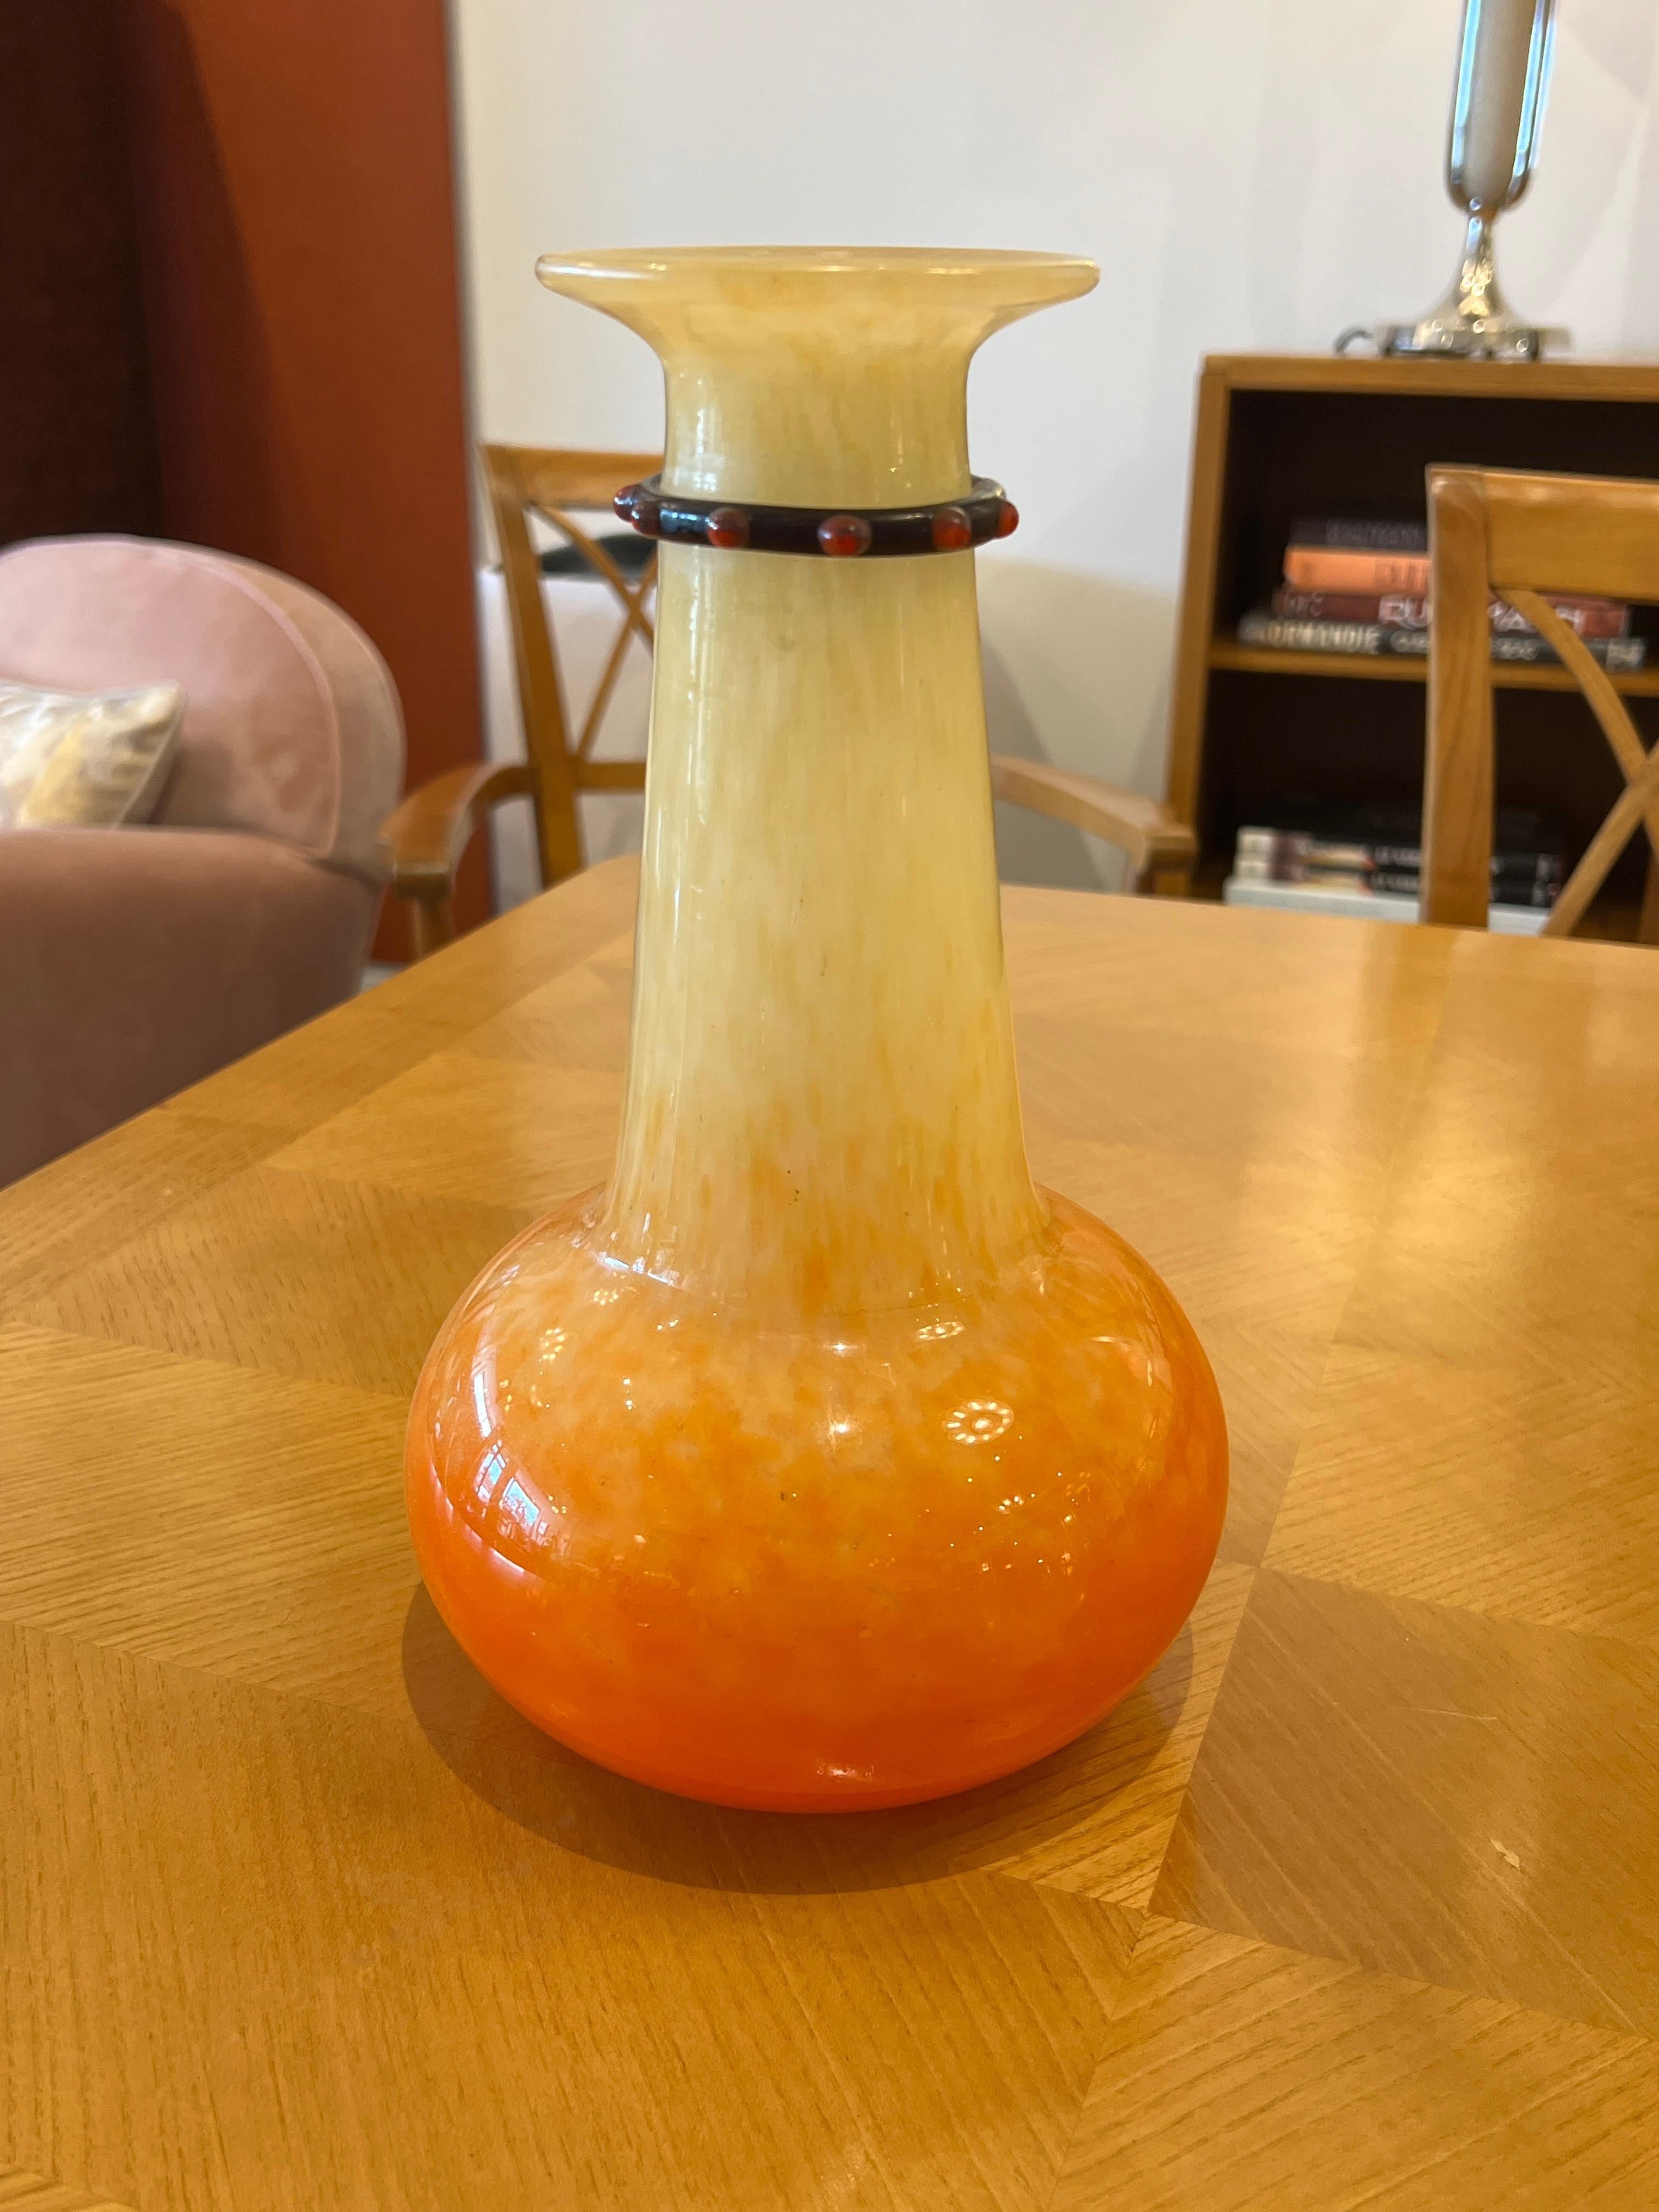 Un vase en verre Art déco français de Charles Schneider dans les tons orange et jaune avec une application en verre autour du col.
Signature : Schneider-France
Charles Schneider était un verrier renommé pendant la période de l'Art déco en France. Il